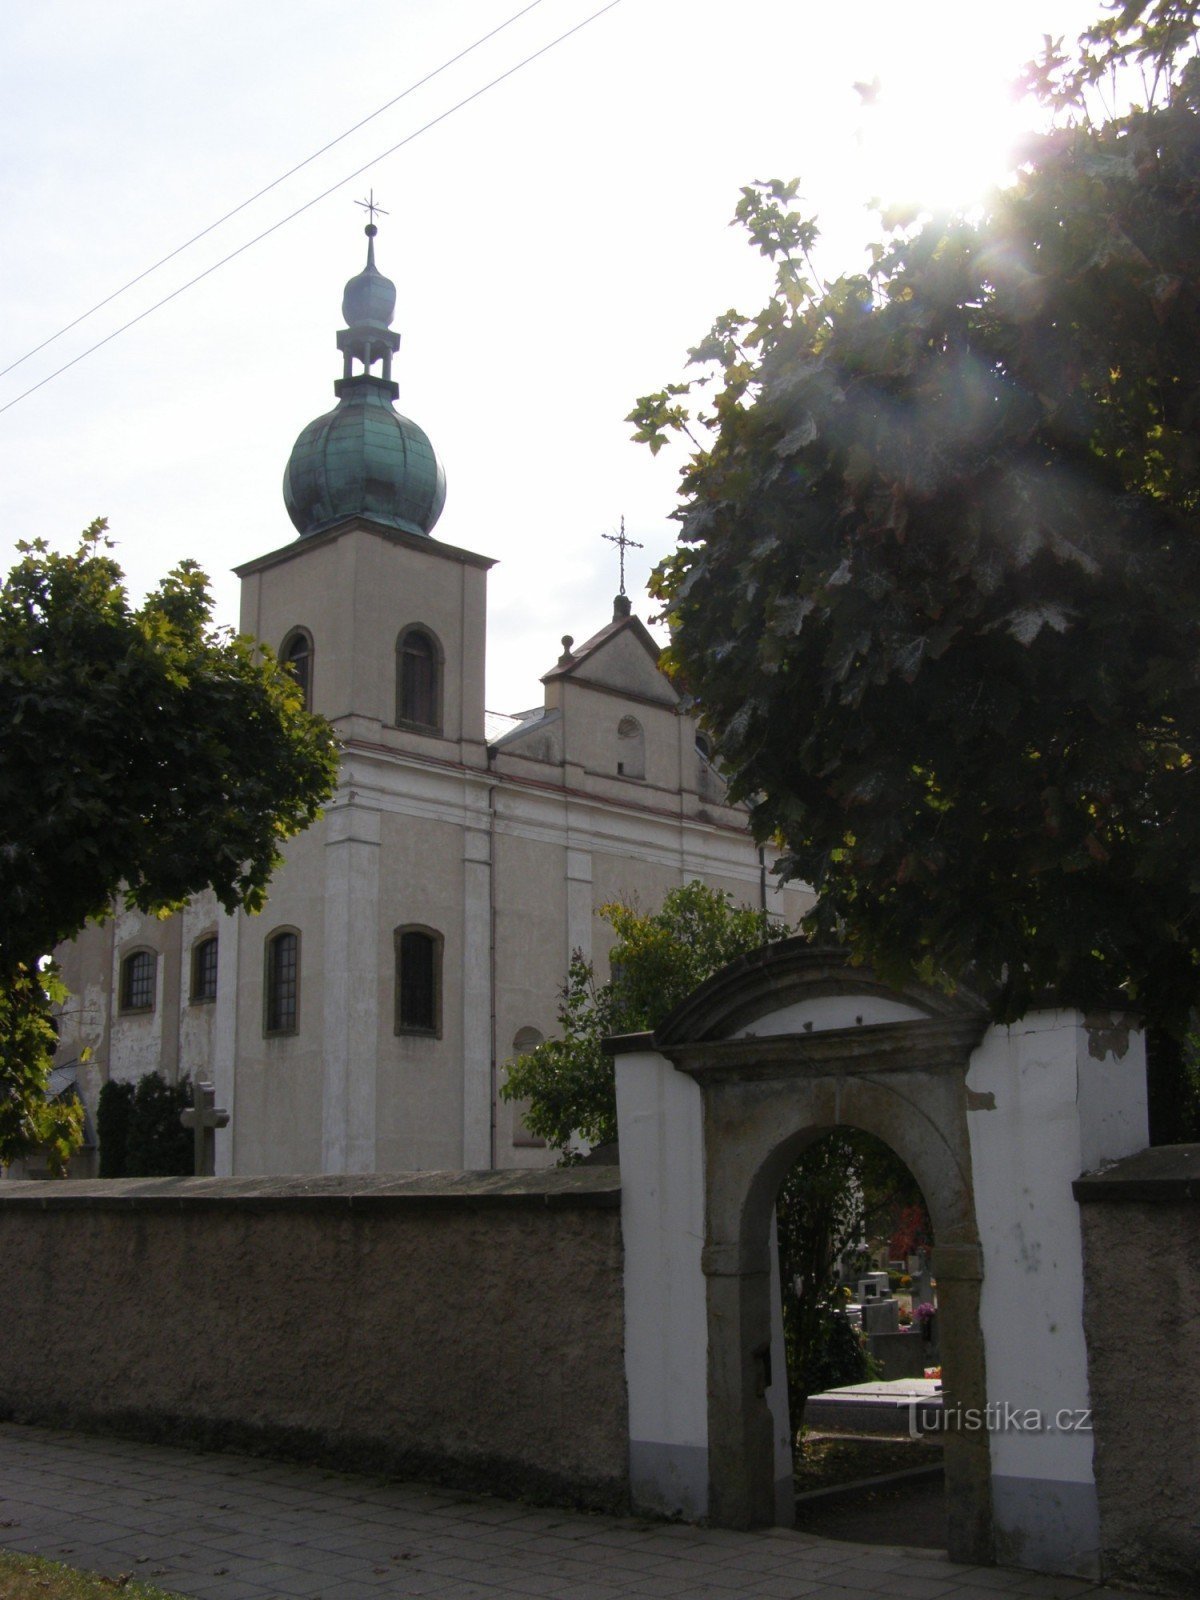 Kostelec nad Orlicí - nhà thờ St. Anne